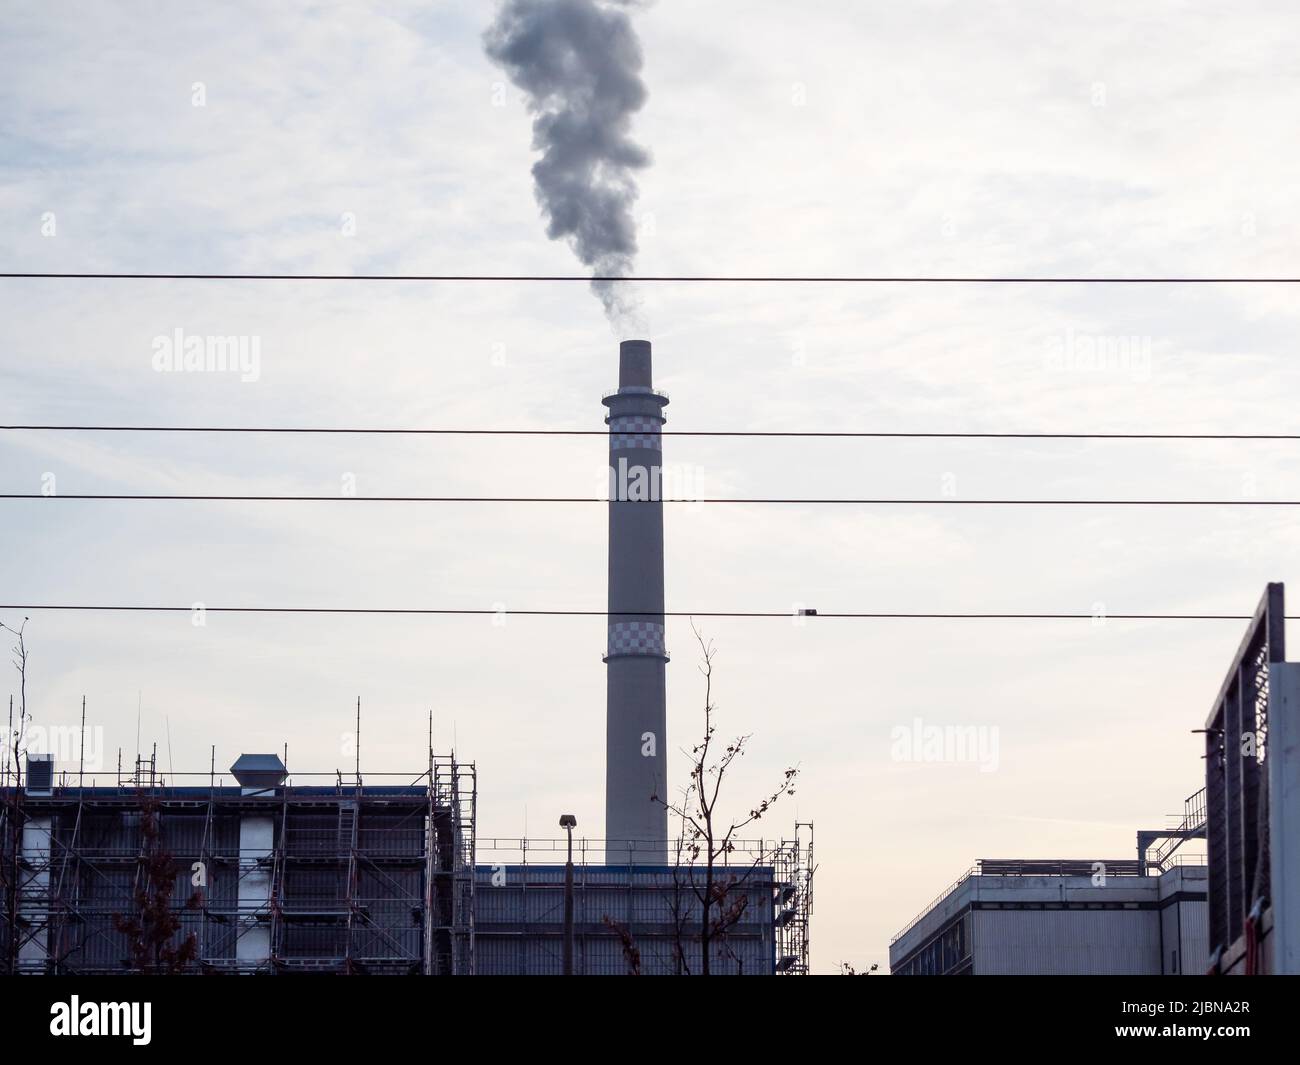 Luftverschmutzung durch Rauch aus Rohren. Weltumweltproblem Luftverschmutzung durch giftigen Rauch. Stockfoto